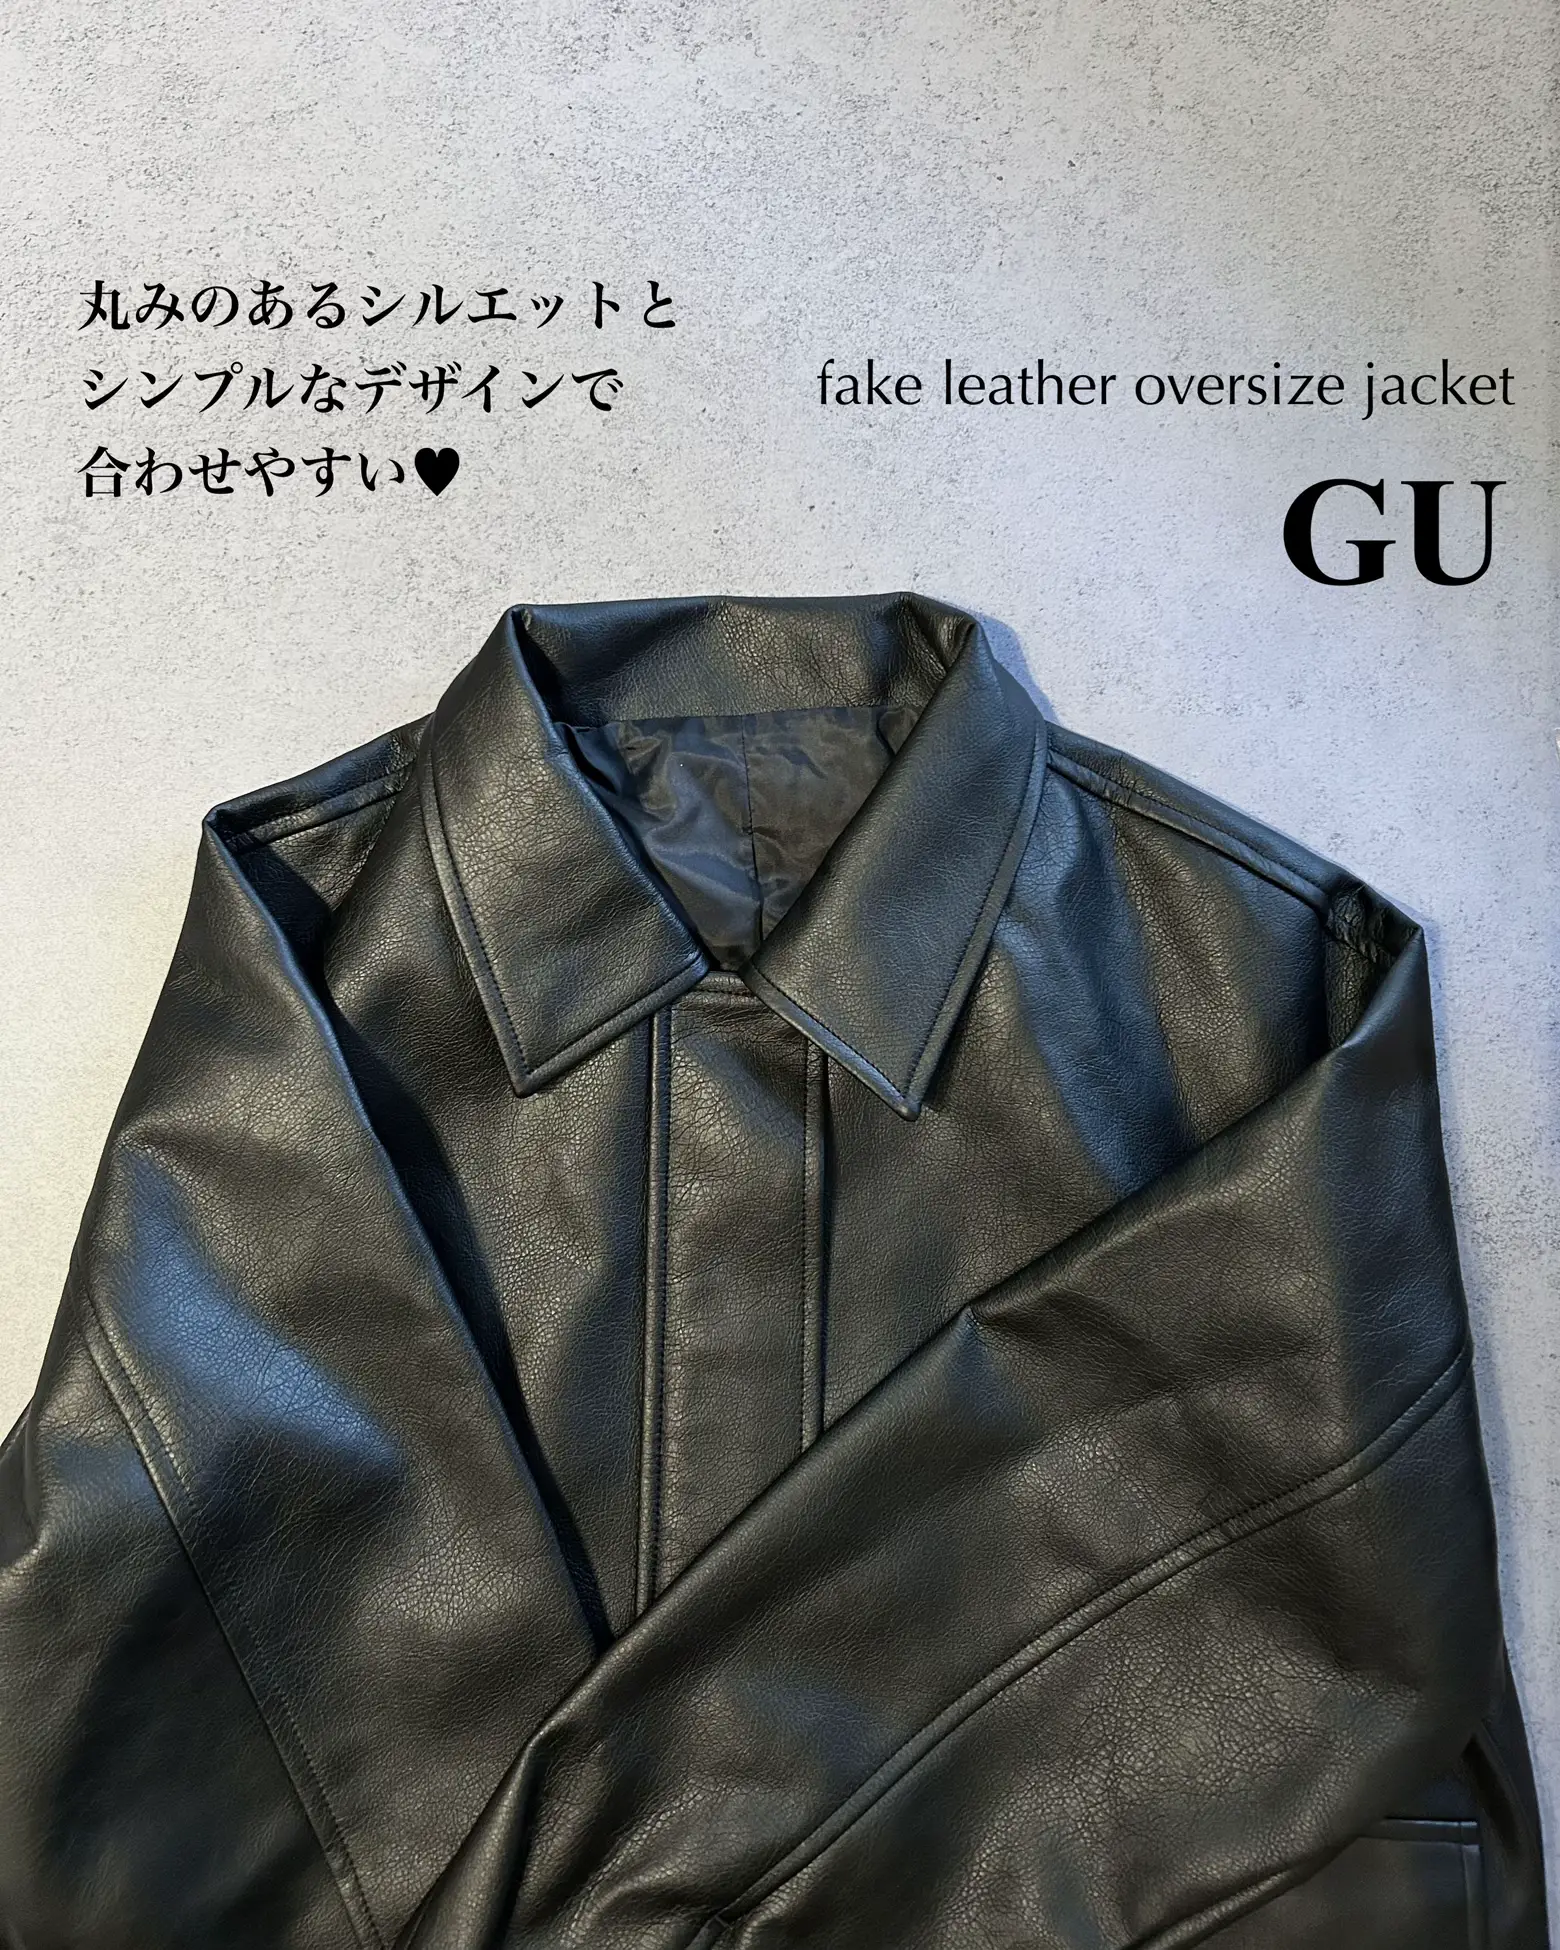 GU 】高見えレザージャケットが¥1,990に値下げ‼︎😳🖤今の時期に